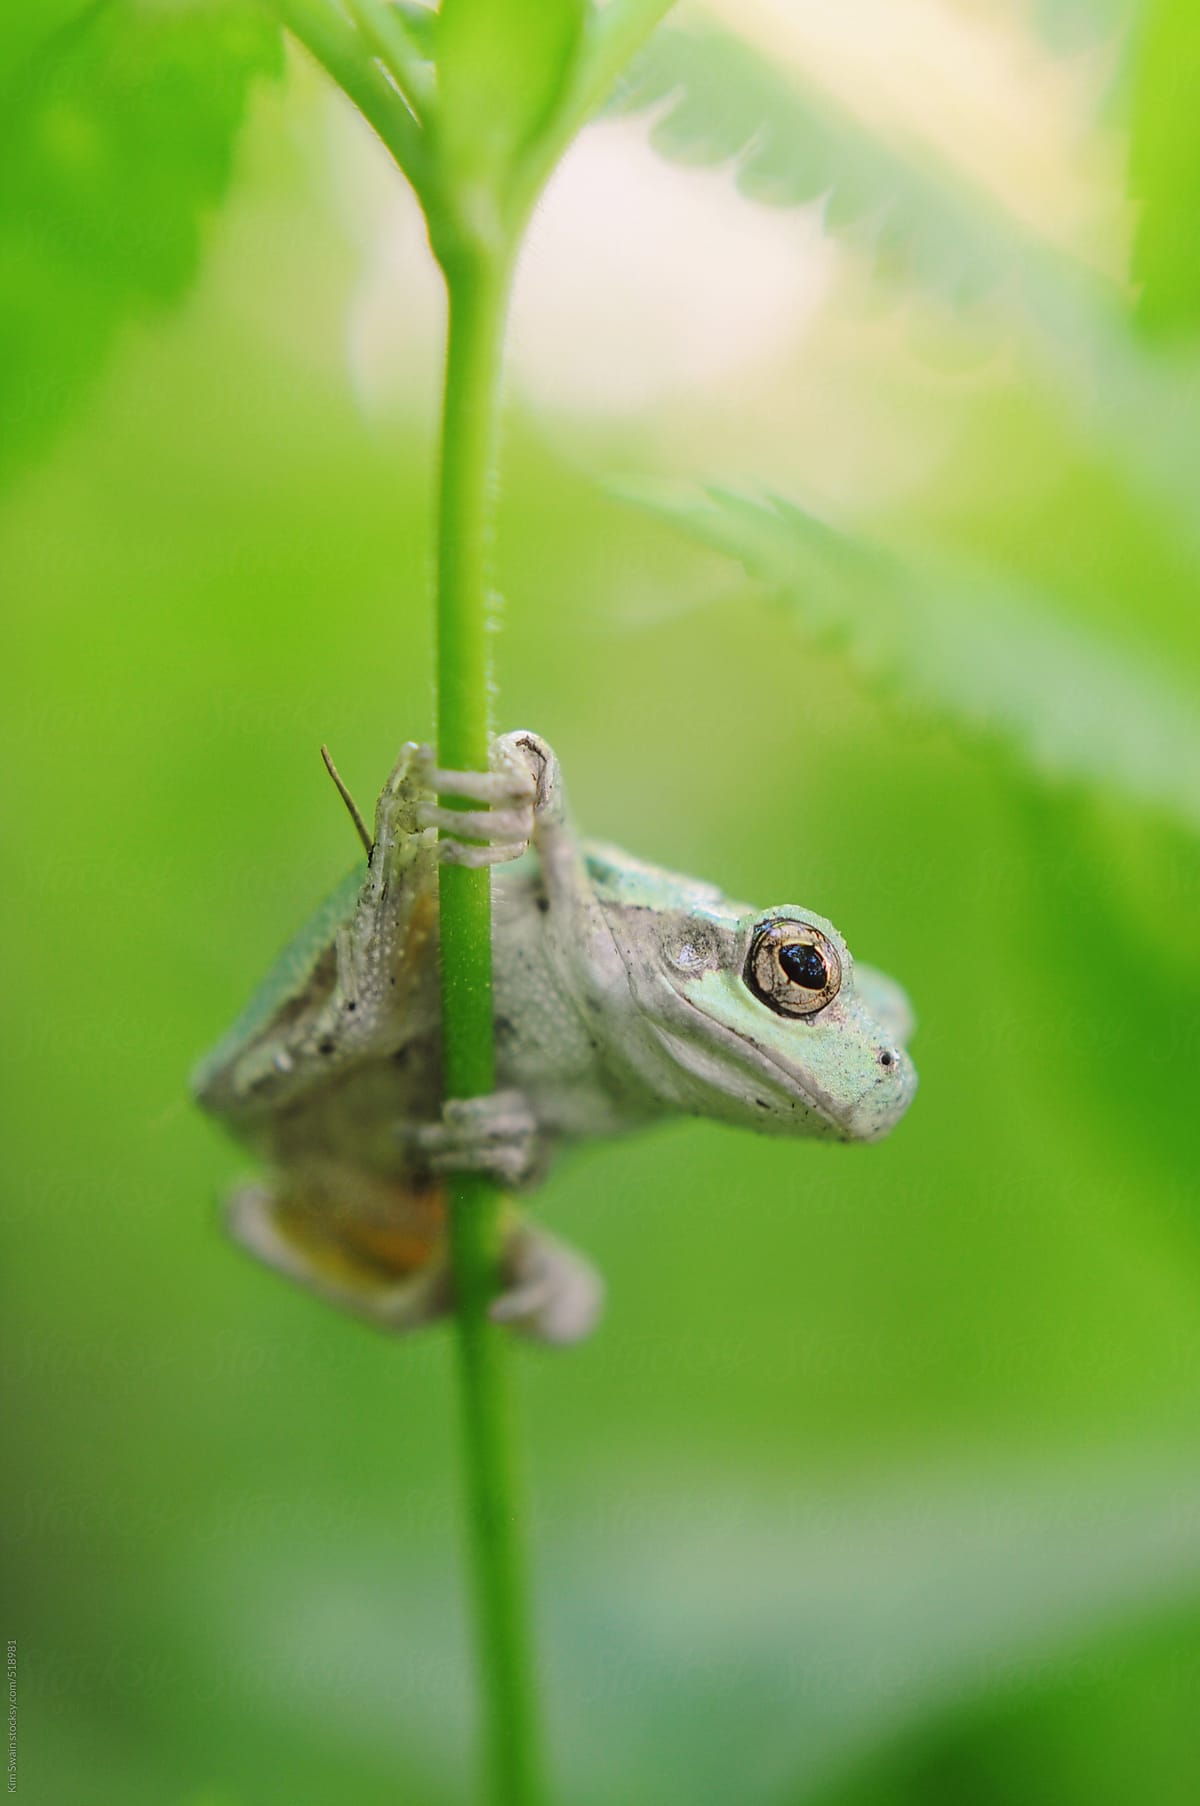 Frog on a stem